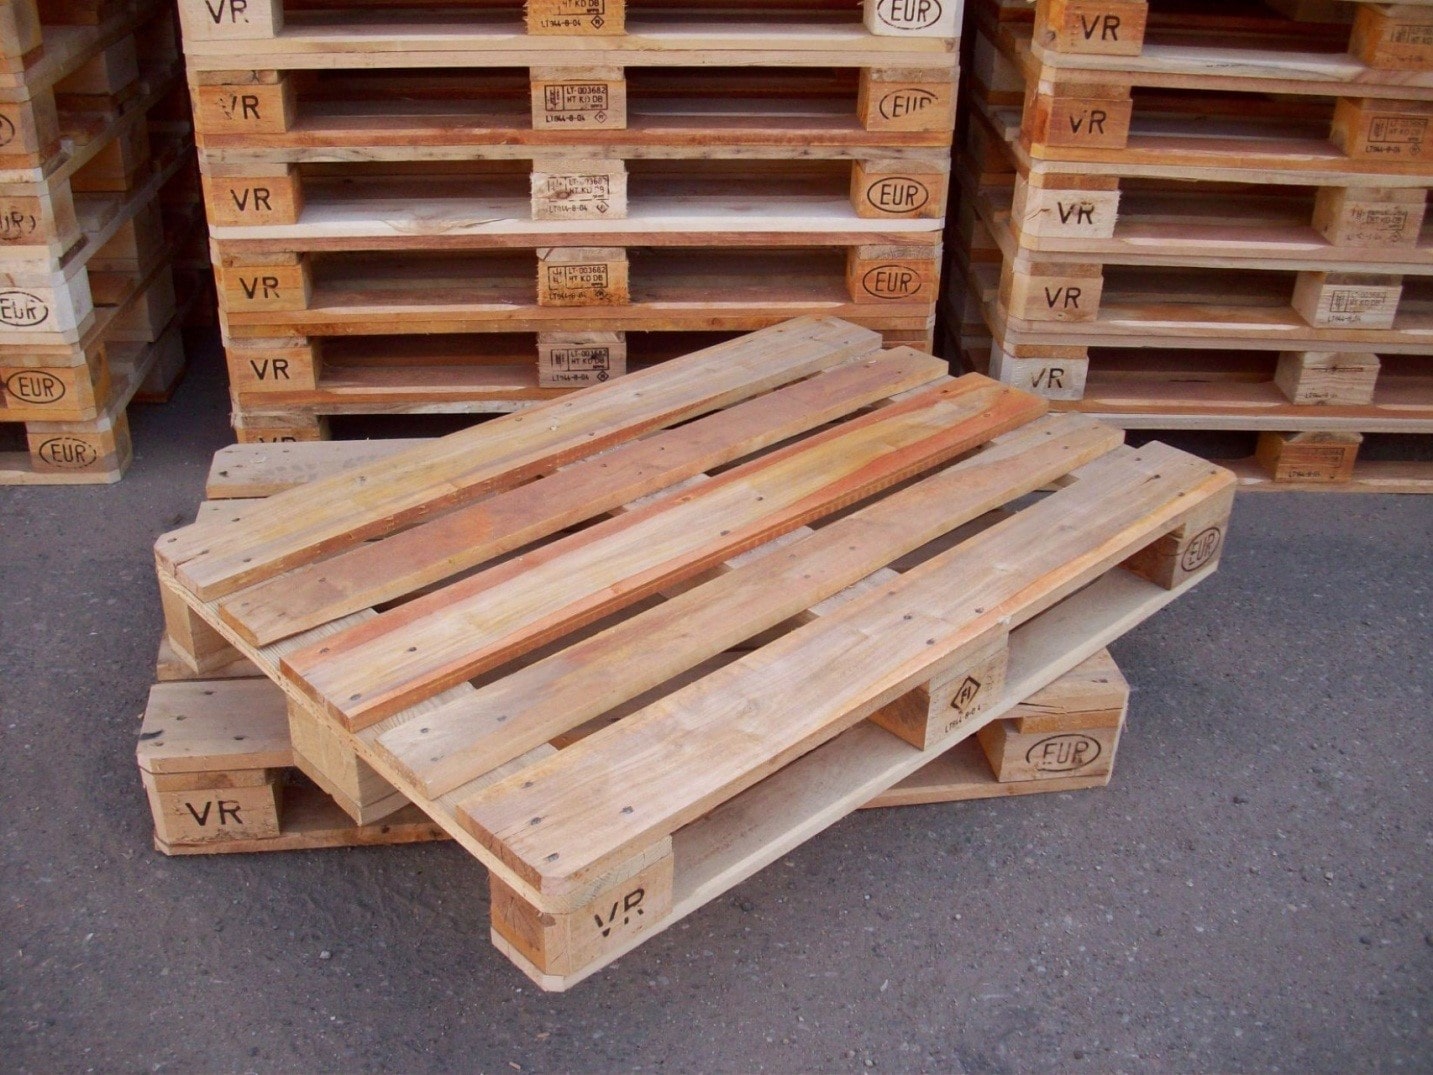 Khử trùng pallet gỗ theo tiêu chuẩn ISPM 15 - Chỉ có tại công ty IFC